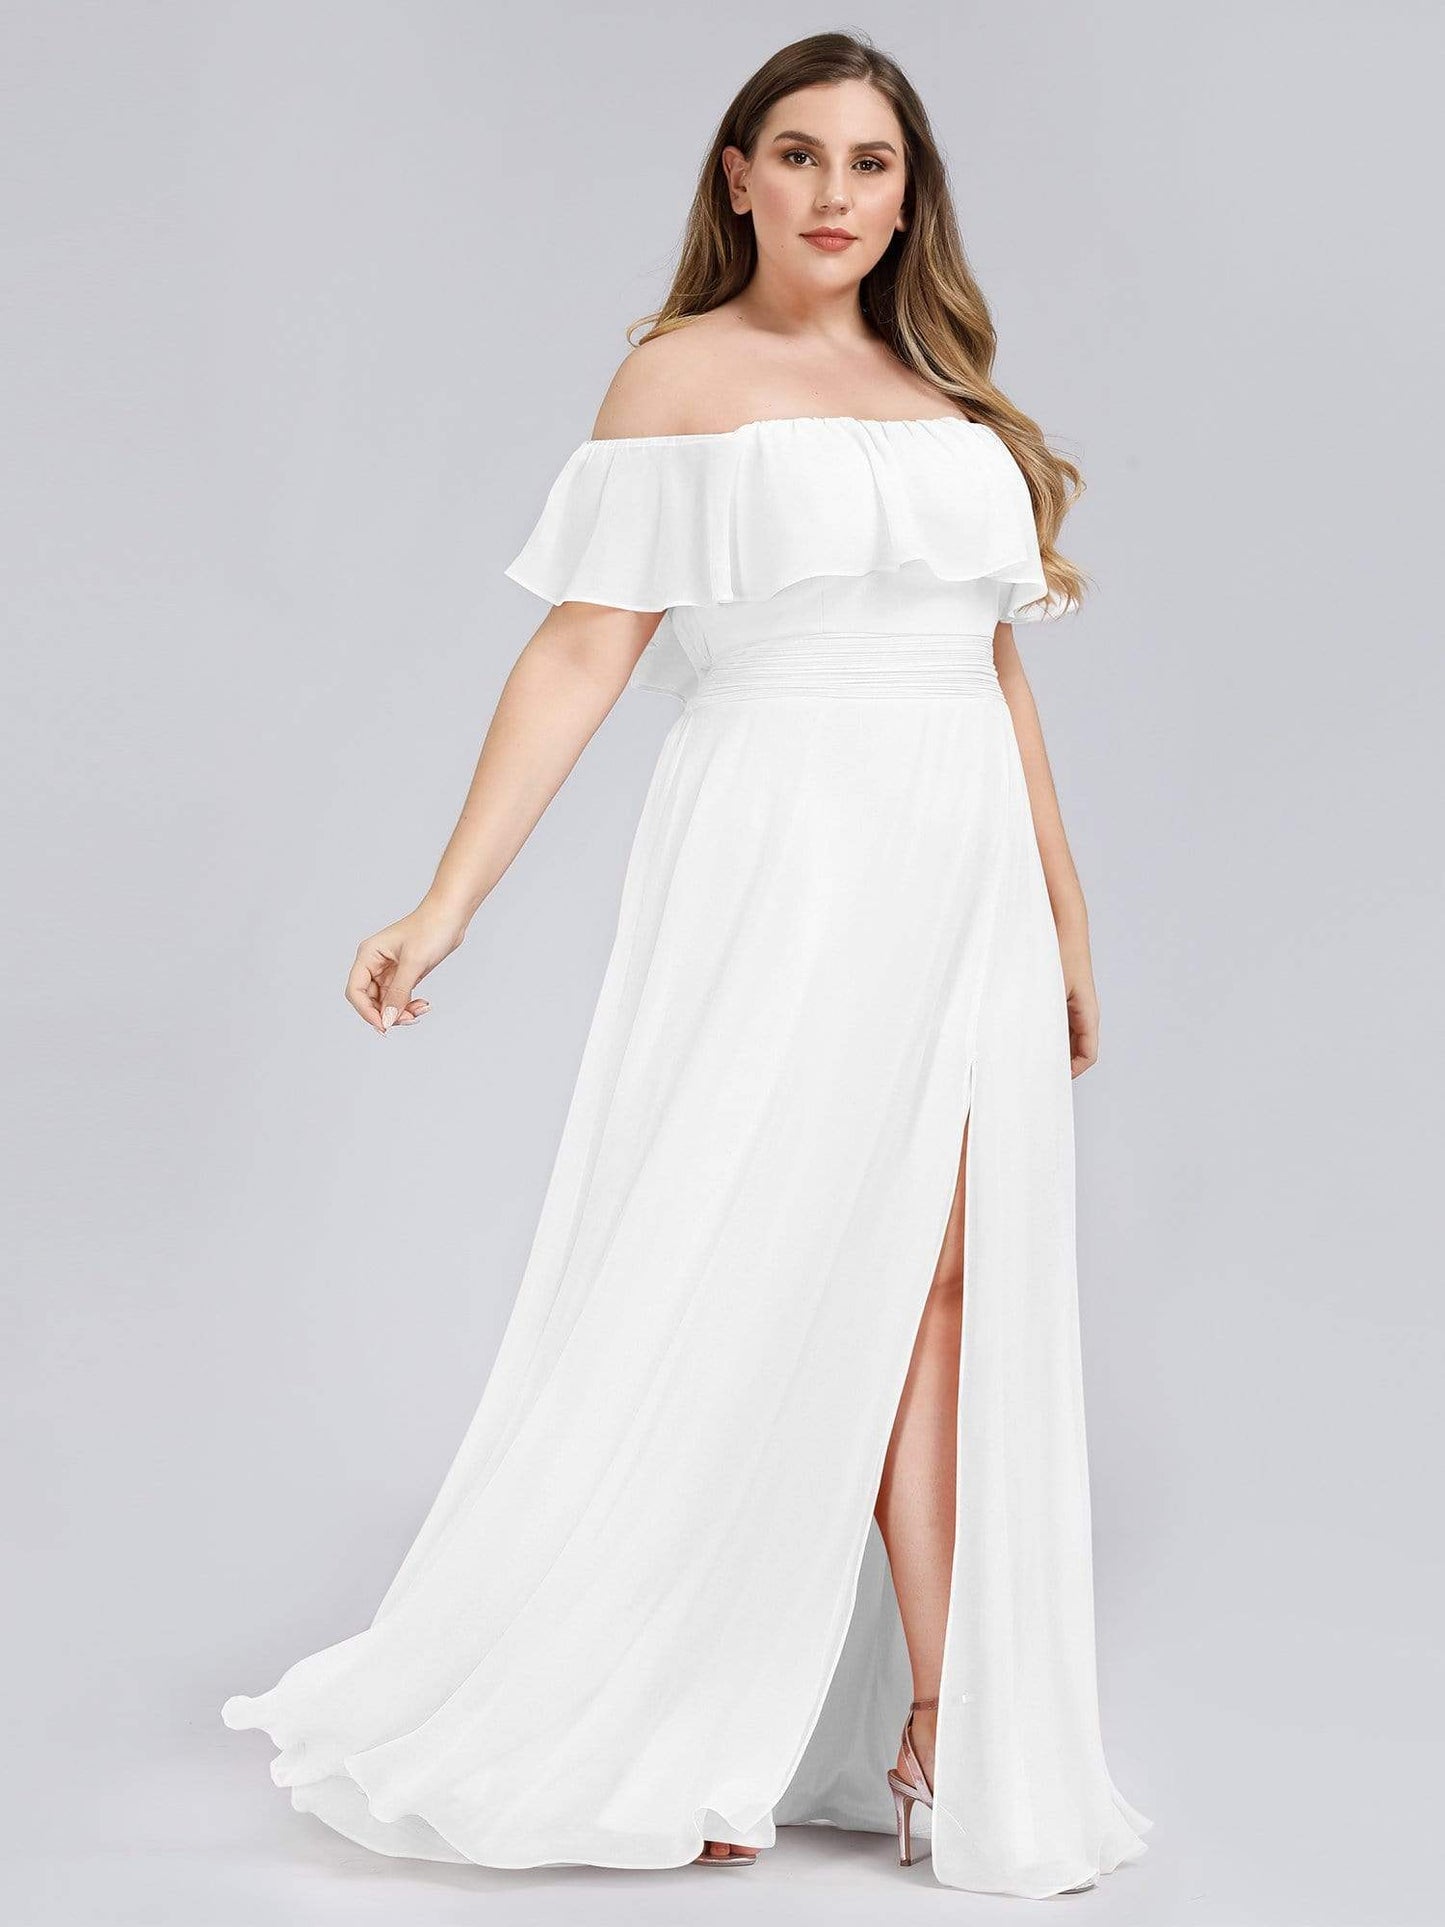 Women's Plus Size Ruffle Thigh Split Wholesale Bridesmaid Dresses